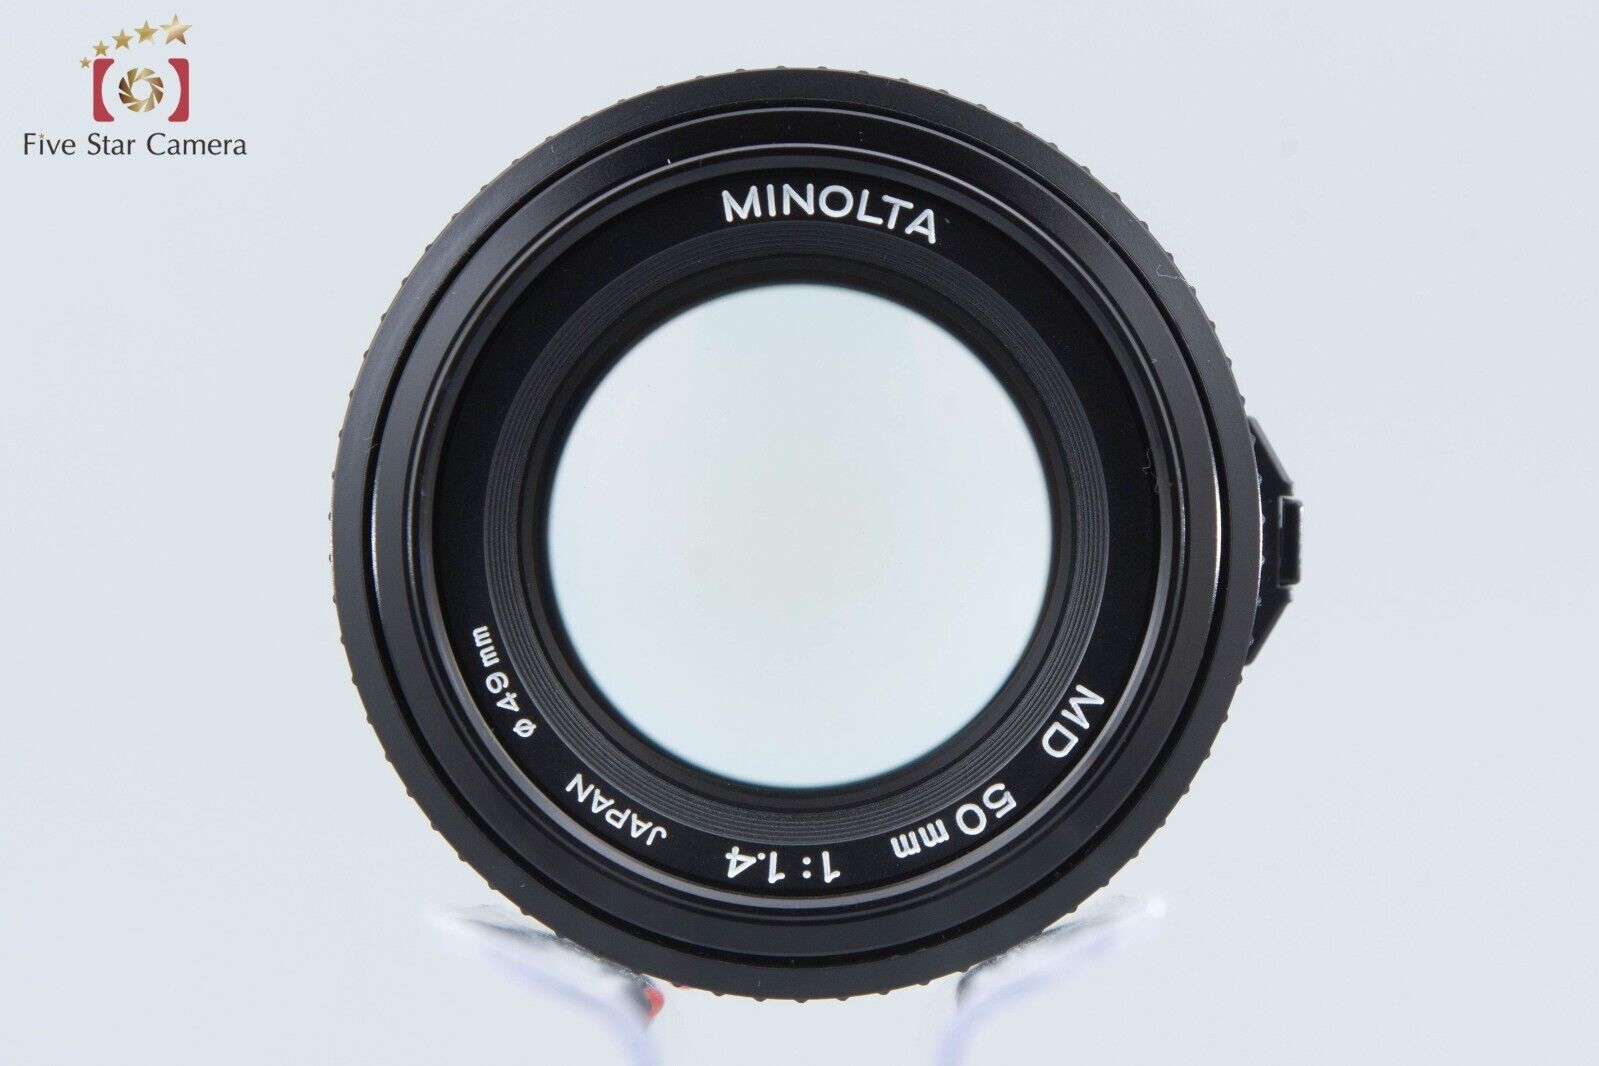 Minolta MD 50mm f/1.4